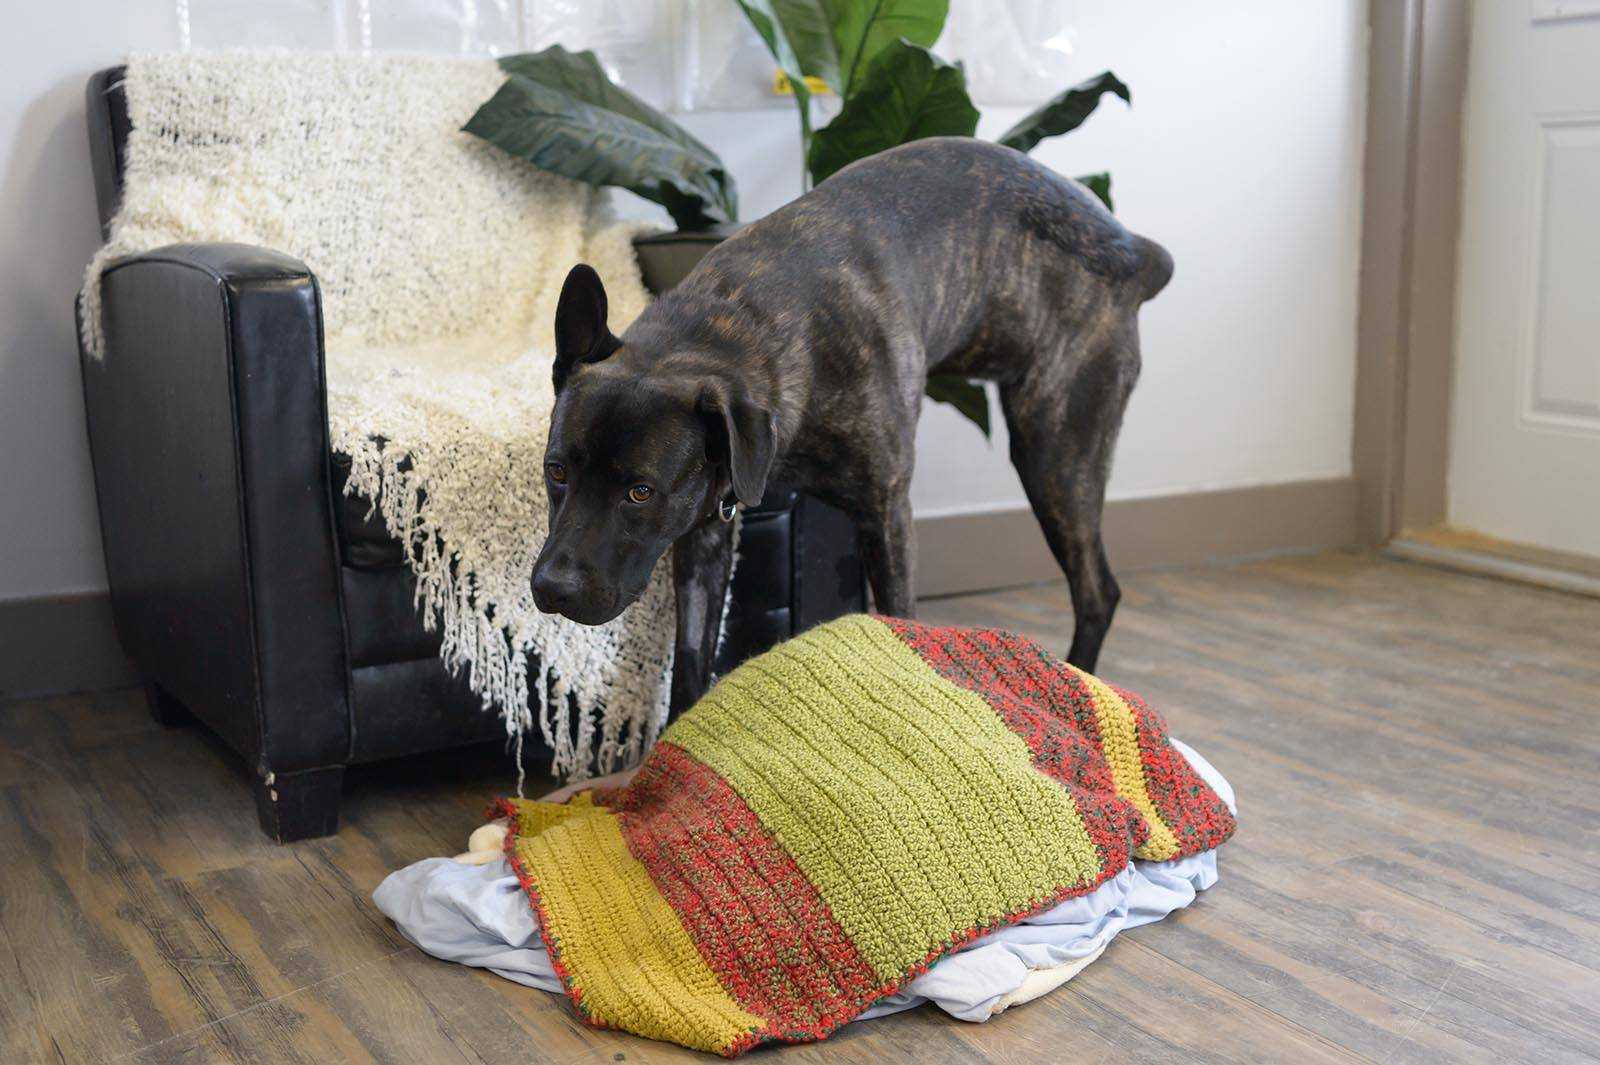 Любите чистоту, но ваша собака метит территорию Узнайте, как пошагово отучить собаку писать в квартире